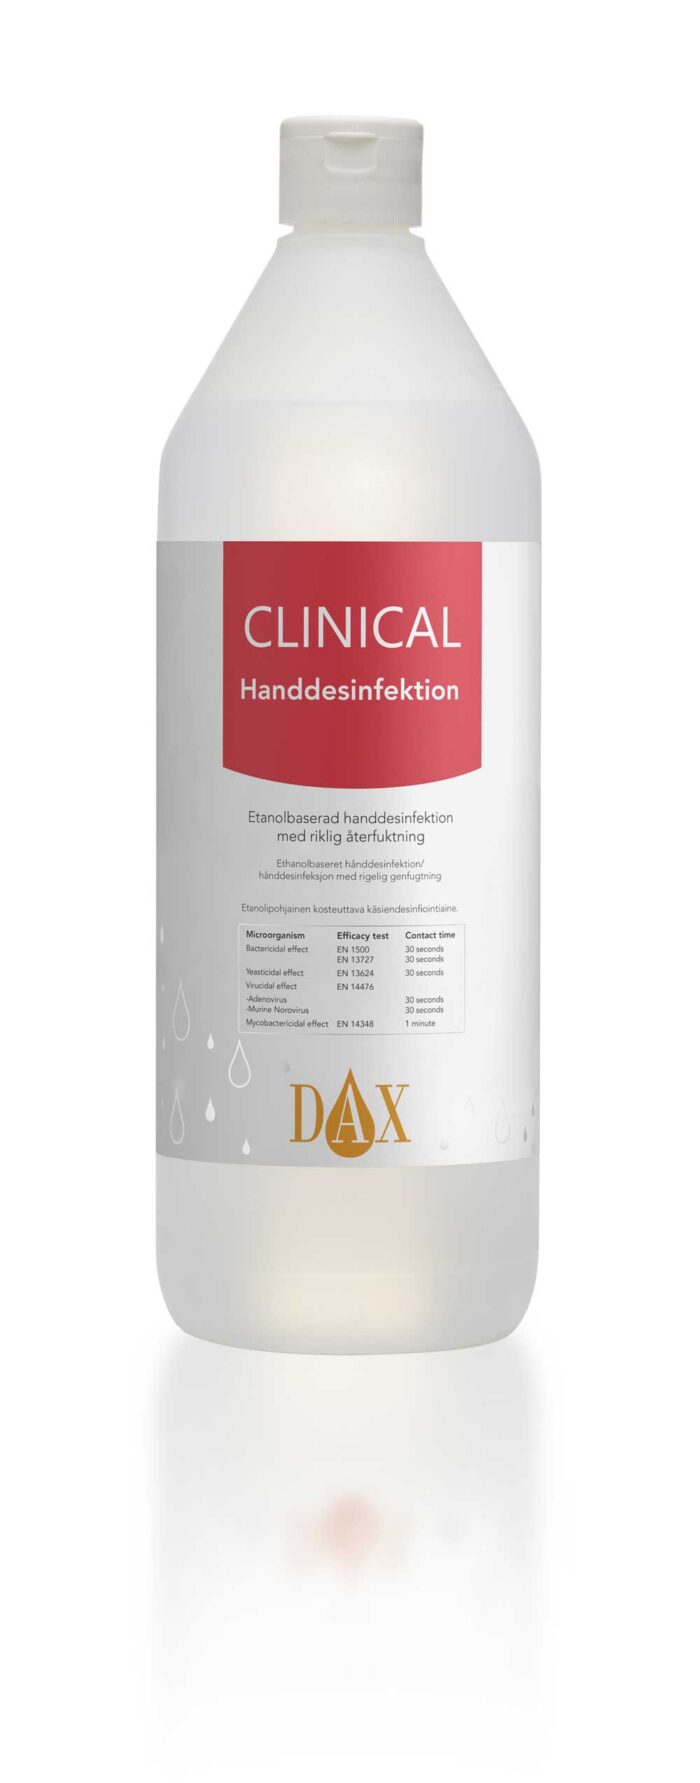 Handdesinfektion DAX Clinical 1000 ml